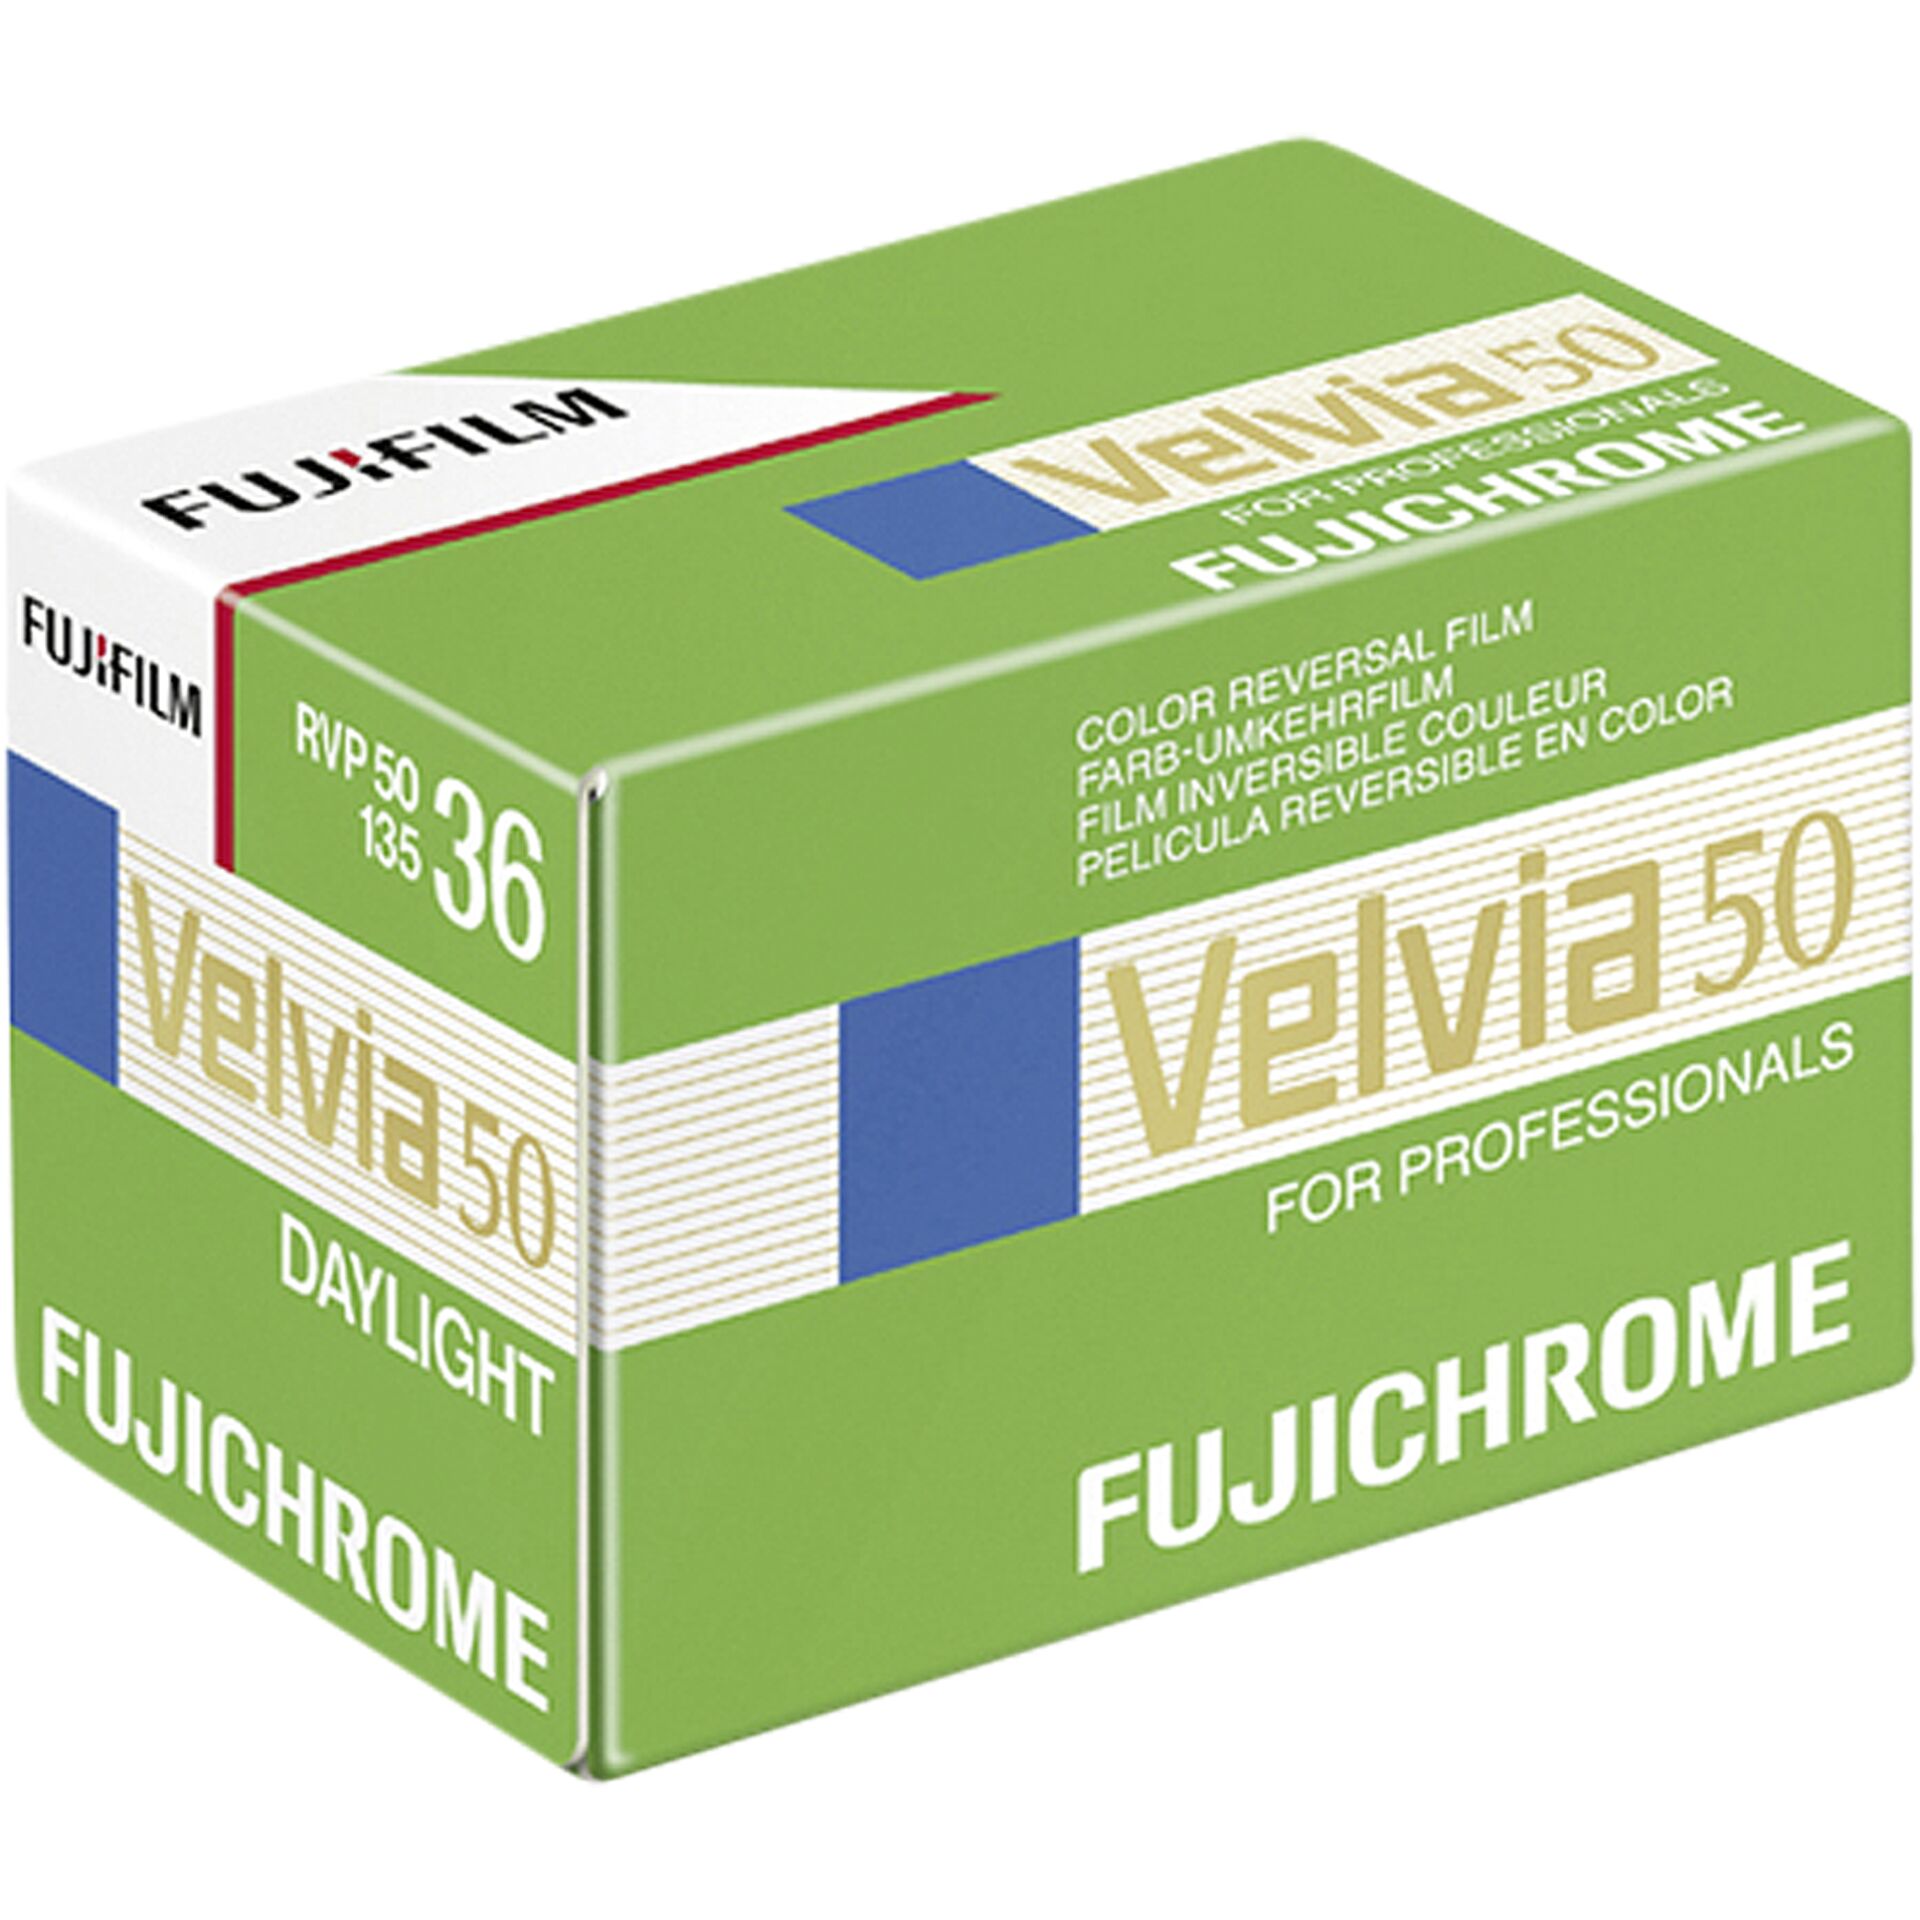 1 Fujifilm Velvia 50    135/36 Nuovo